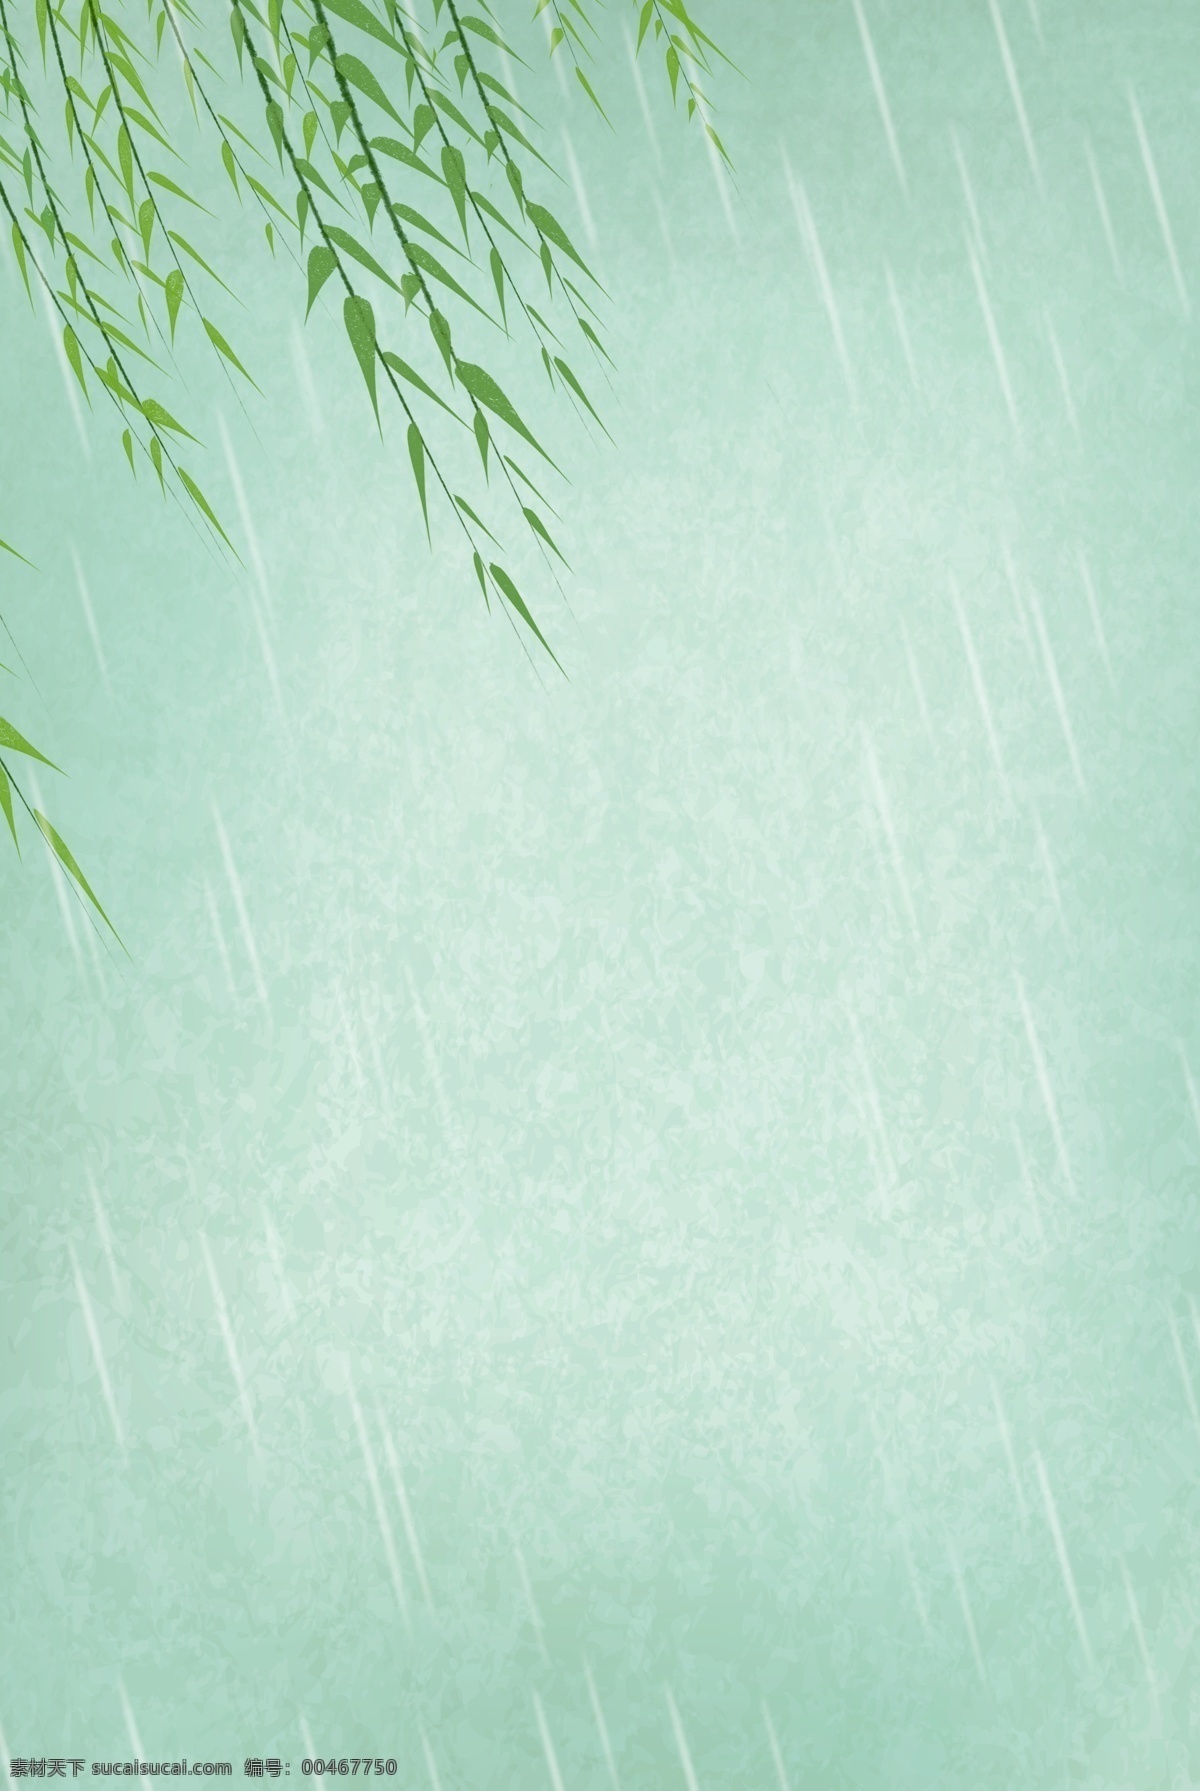 诗意 烟雨 海报 背景 图 柳 雨 复古纸 绿色 淡雅 脱俗